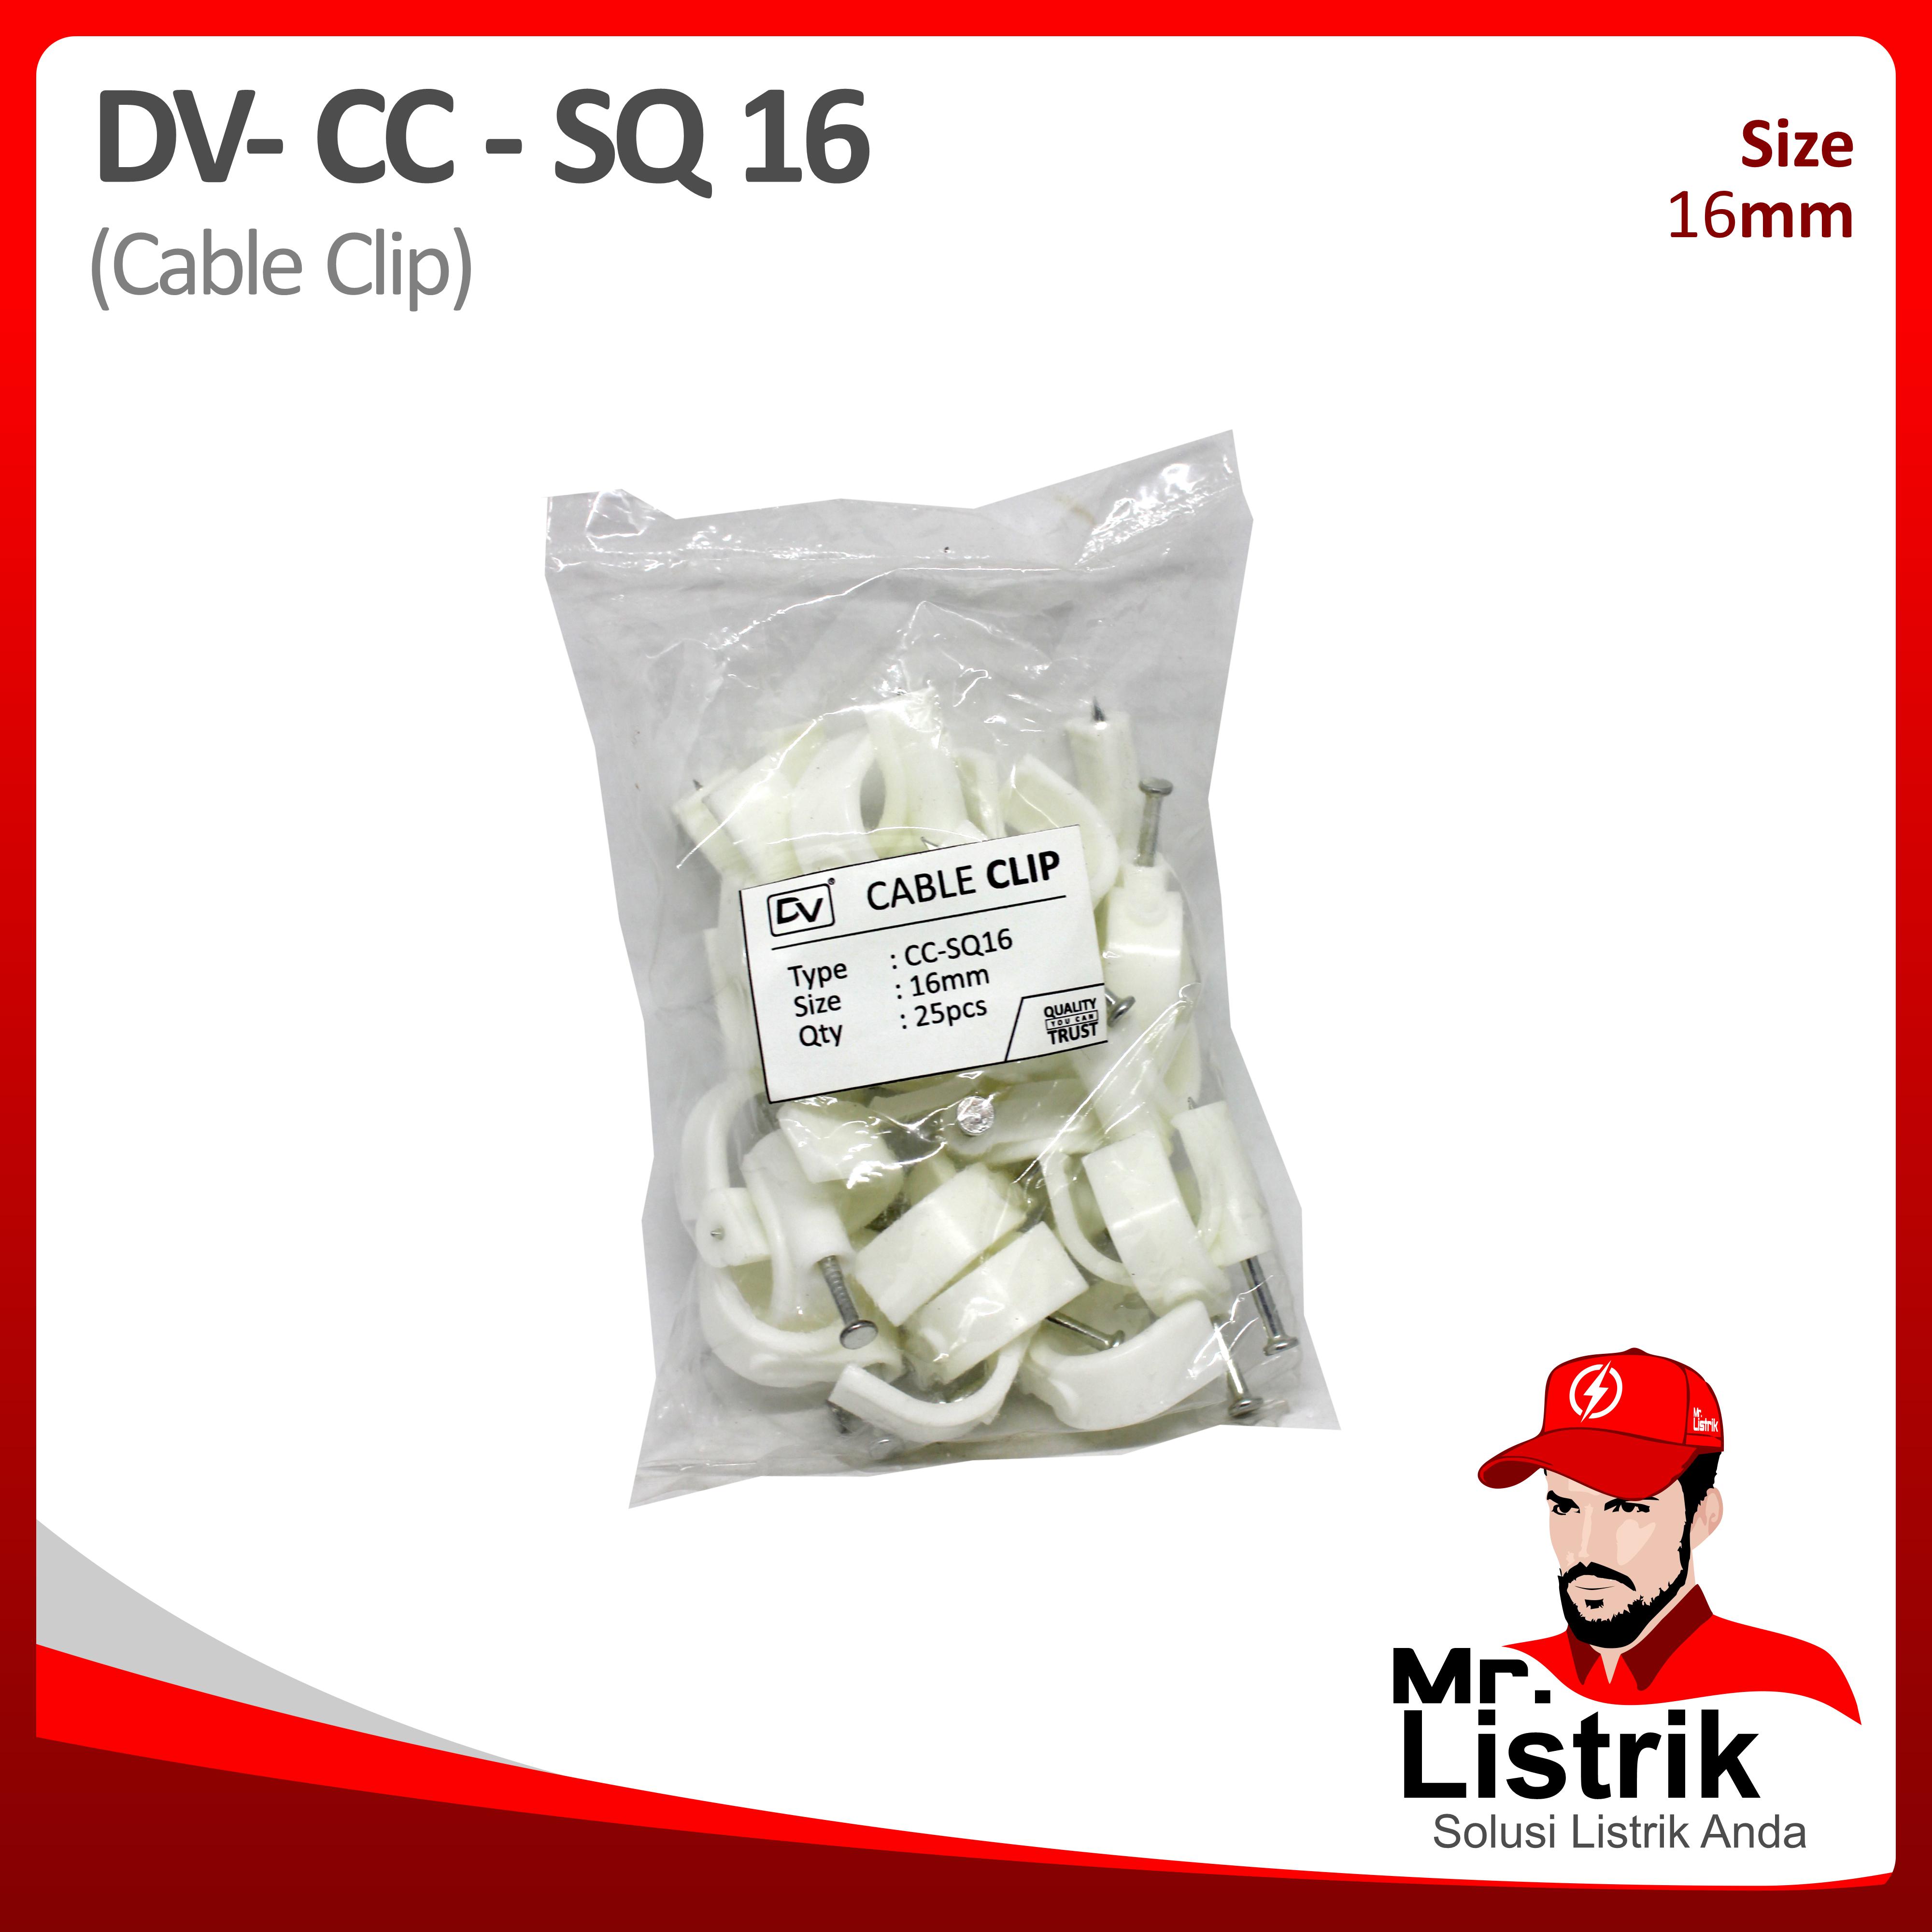 Cable Clip 16mm DV CC-SQ 16